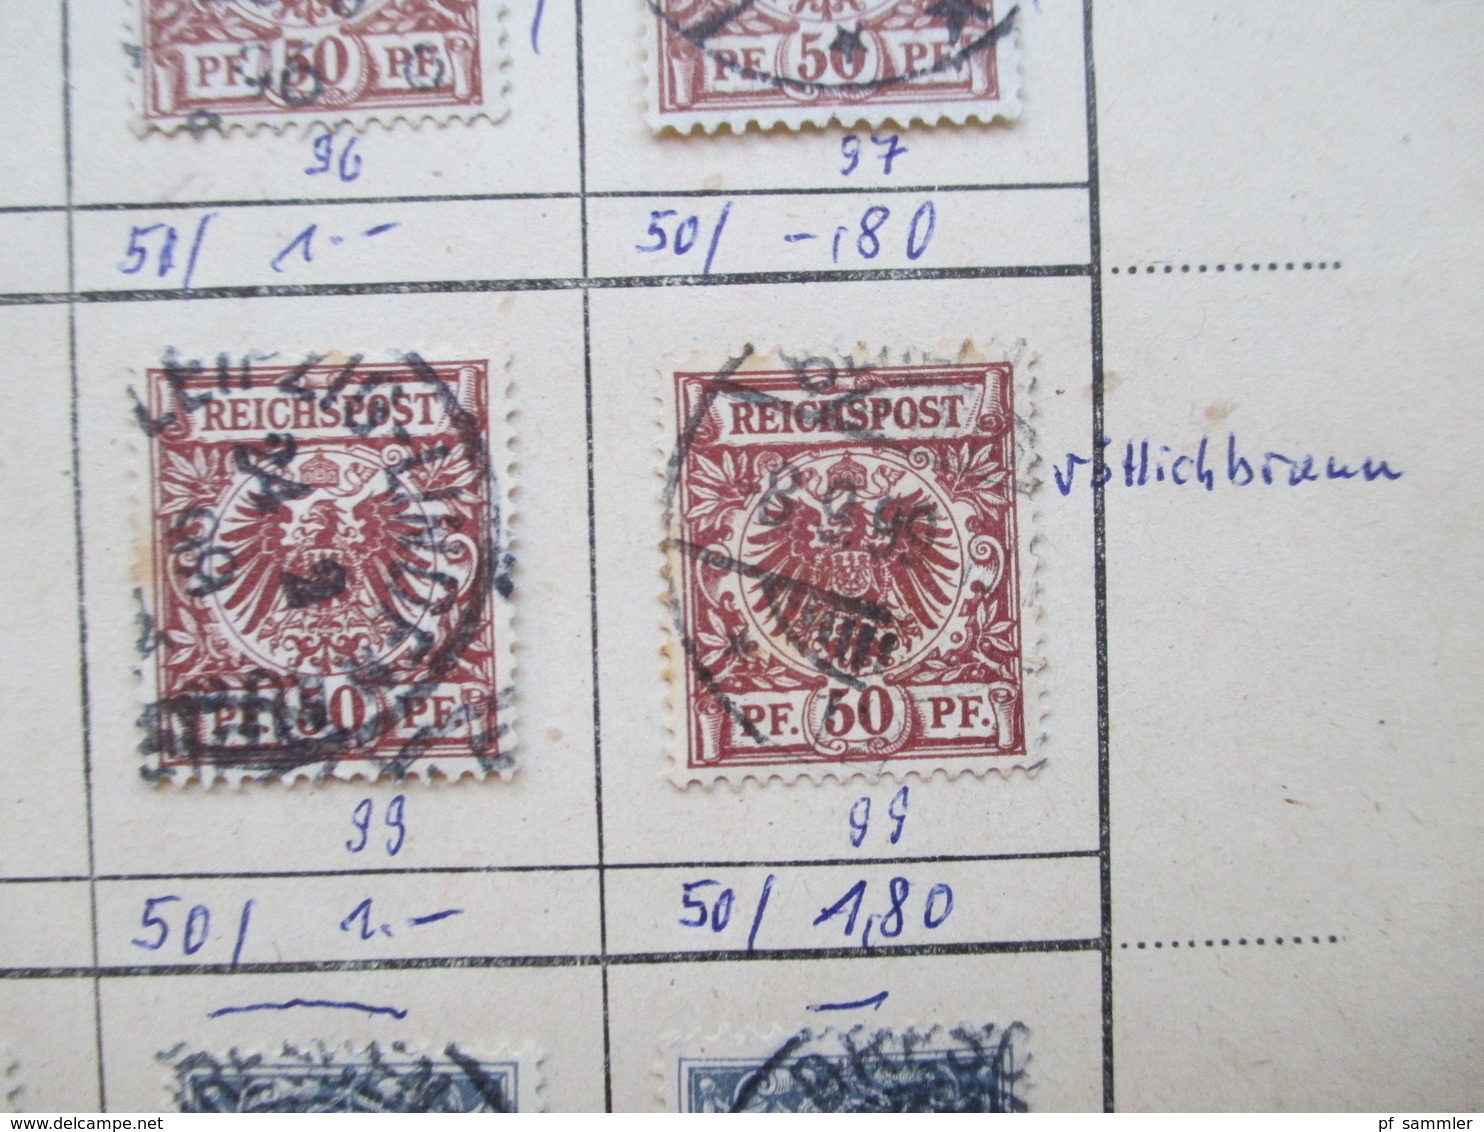 DR altes Auswahlheft ab Reichsadler ca. 1875 - 1918. gestempelt! Farben / Zwischenstege / schöne Stempel! Senkr. Paare